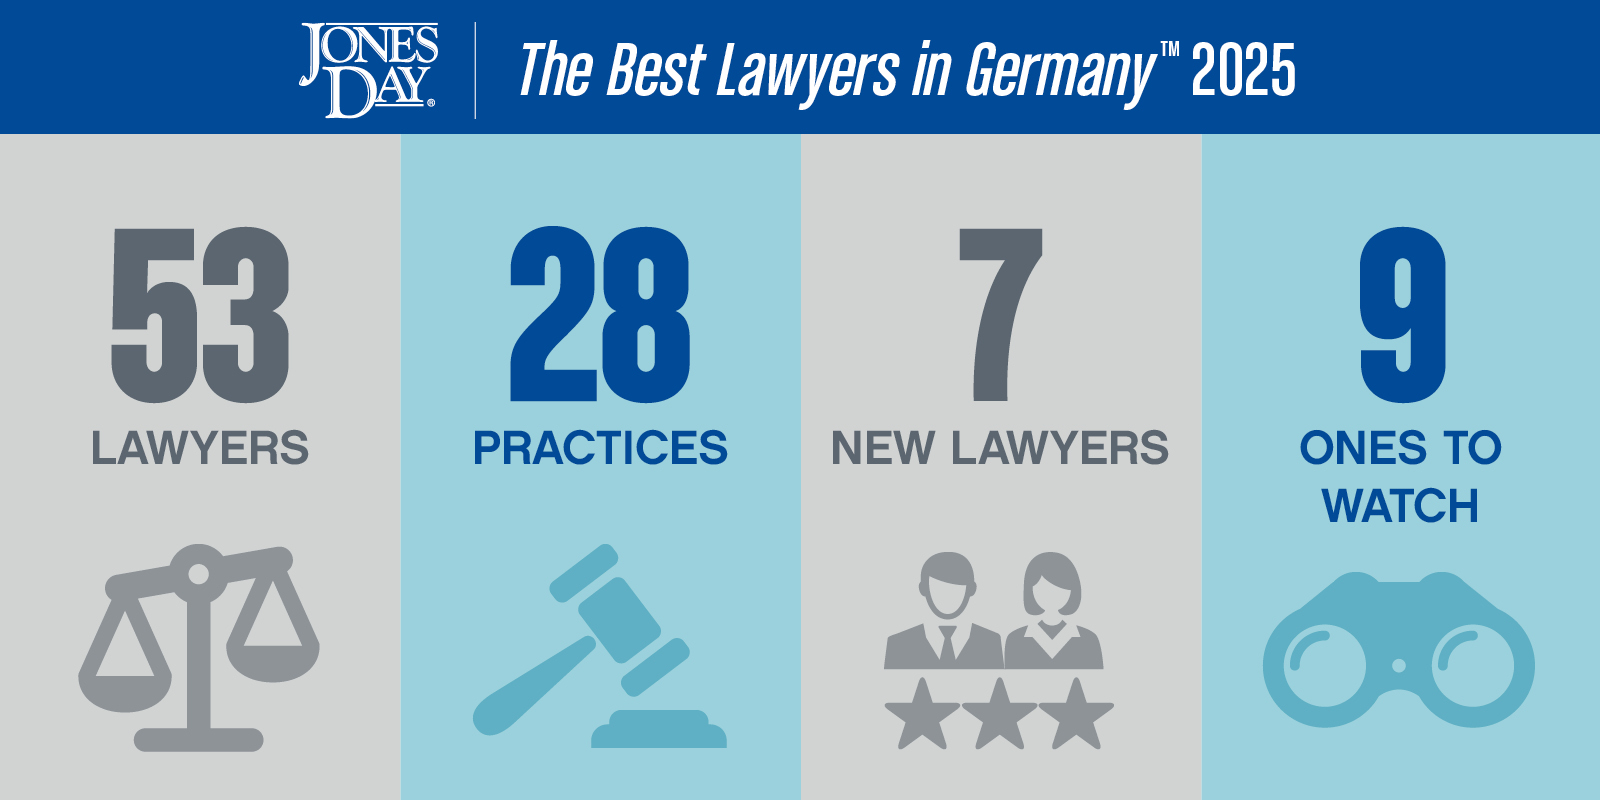 Jones Day Lawyers win The Best Lawyers in Germany 2025 